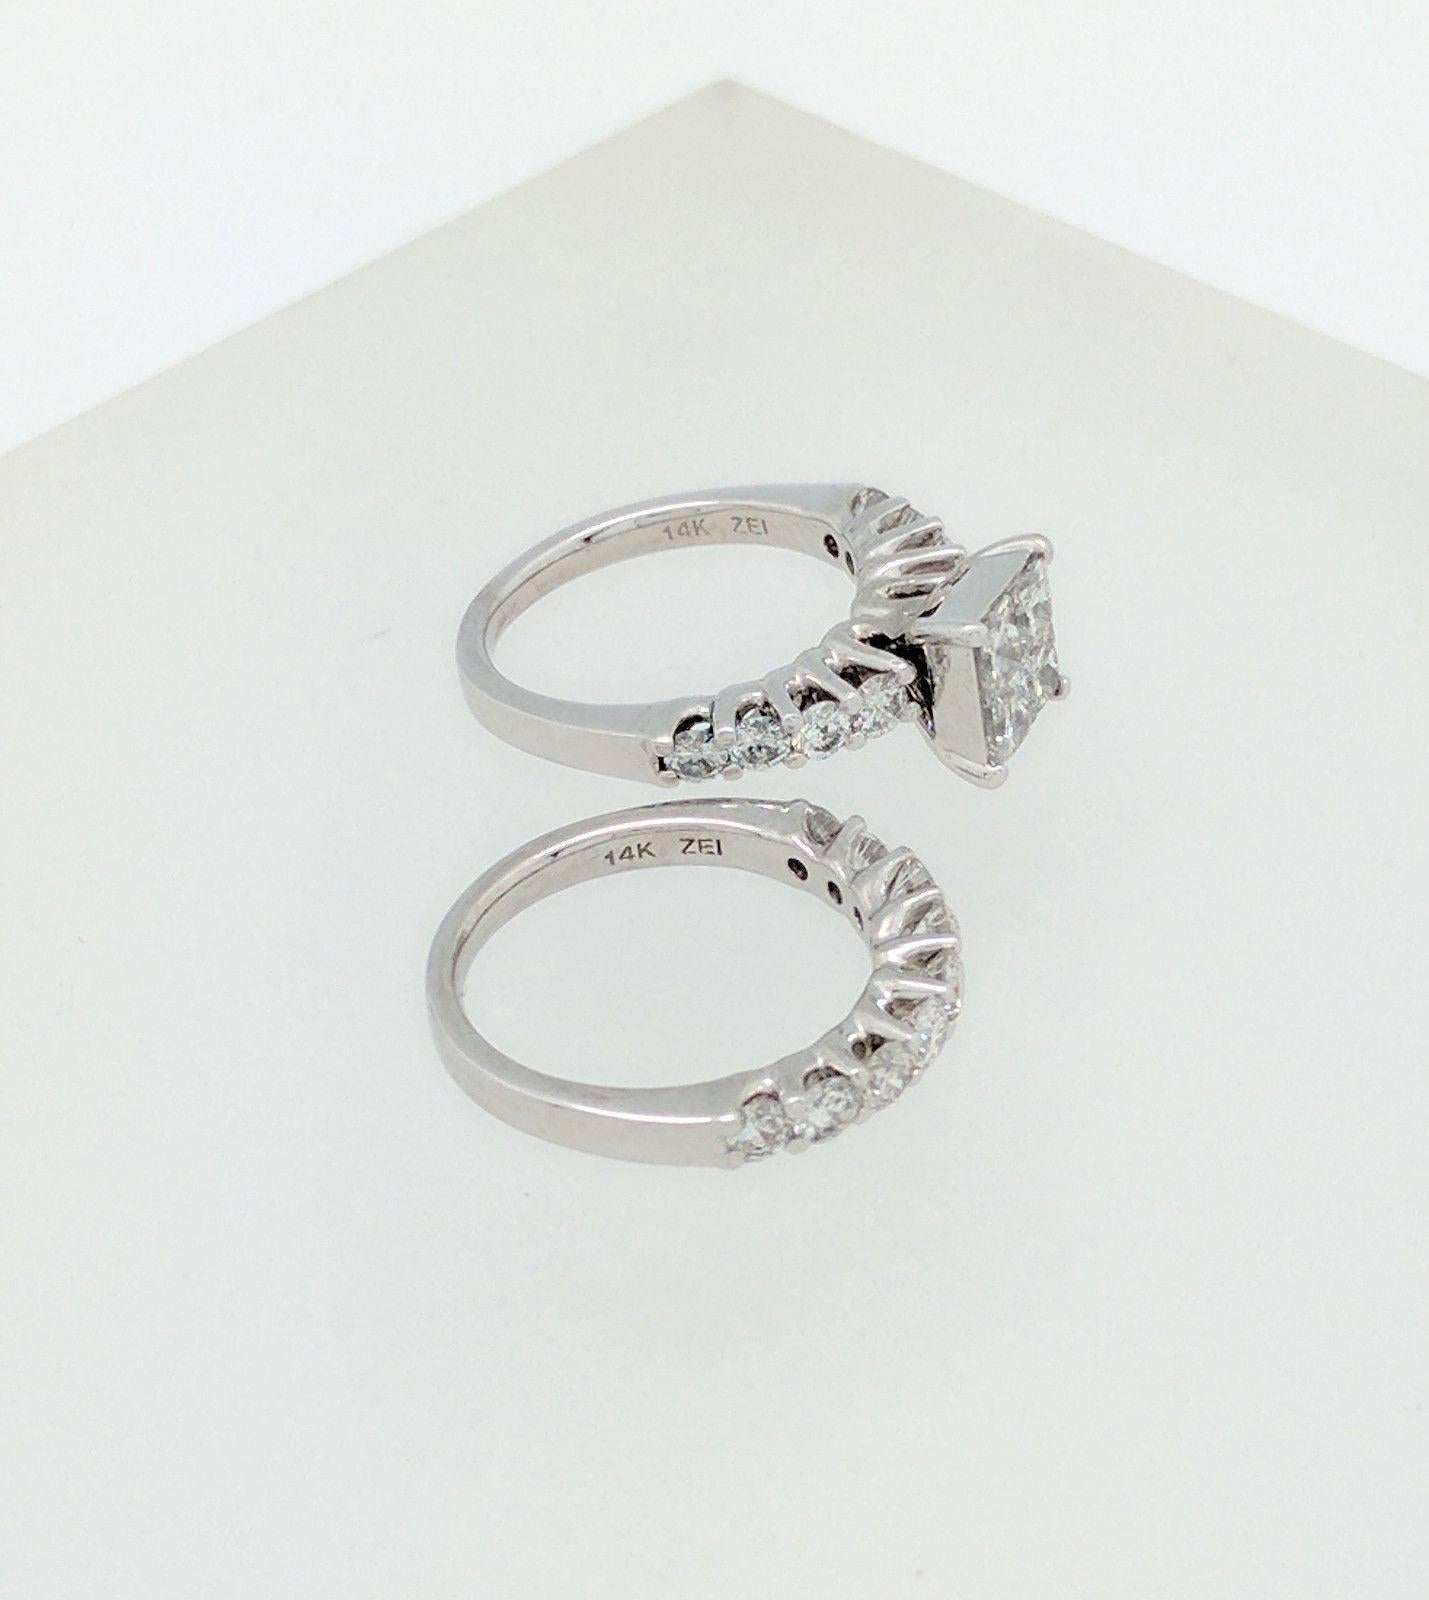 Women's 14 Karat Gold 3 Carat Illusion Set Diamond Engagement Ring with Matching Band